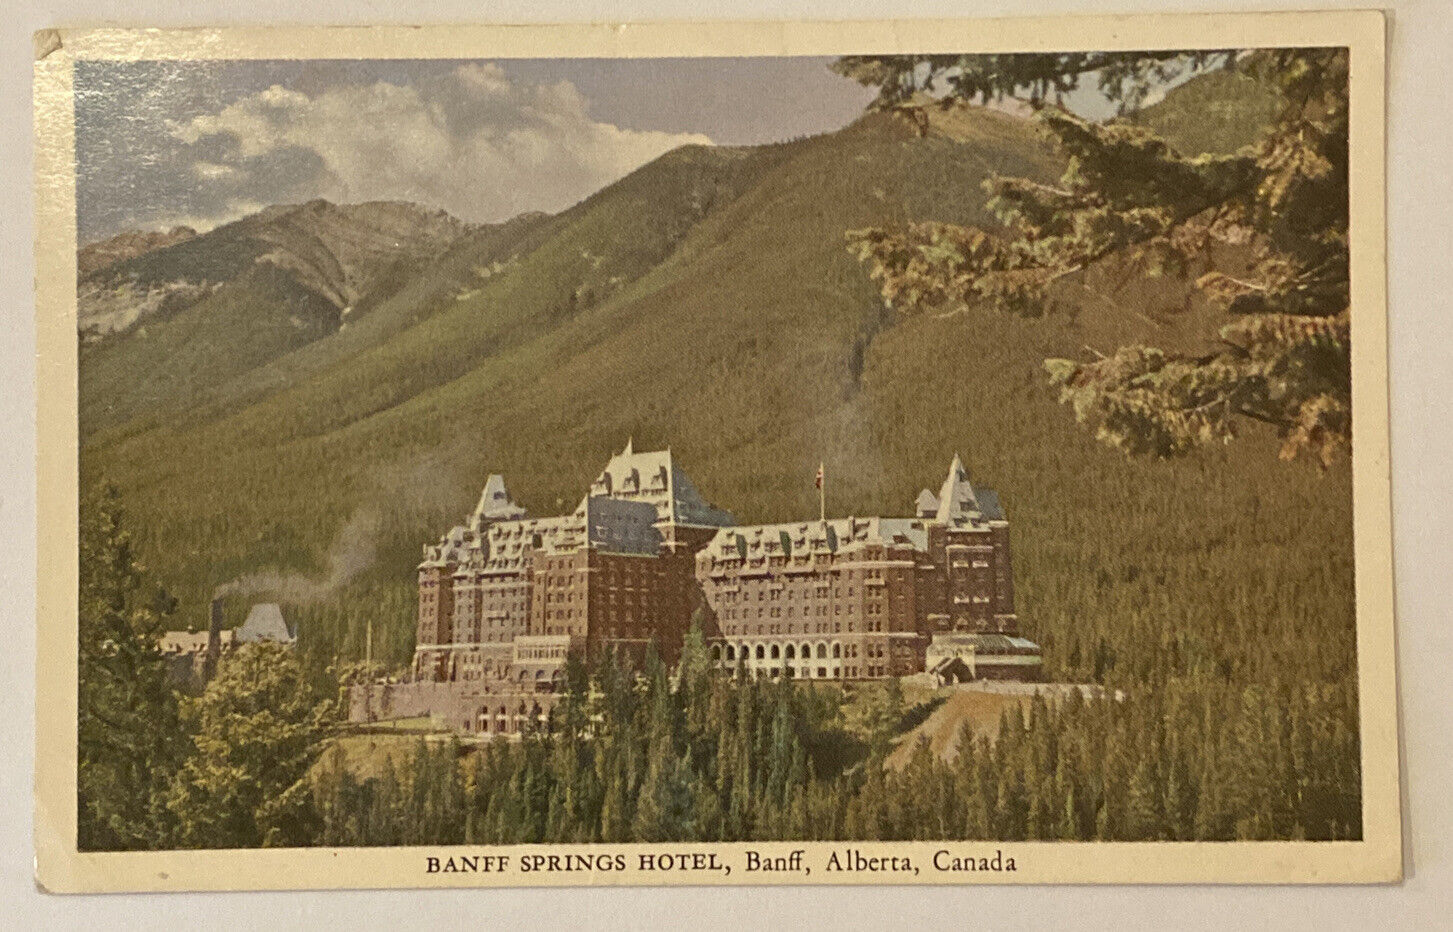 Banff Springs Hotel, Banff, Alberta, Canada, Vintage Postcard